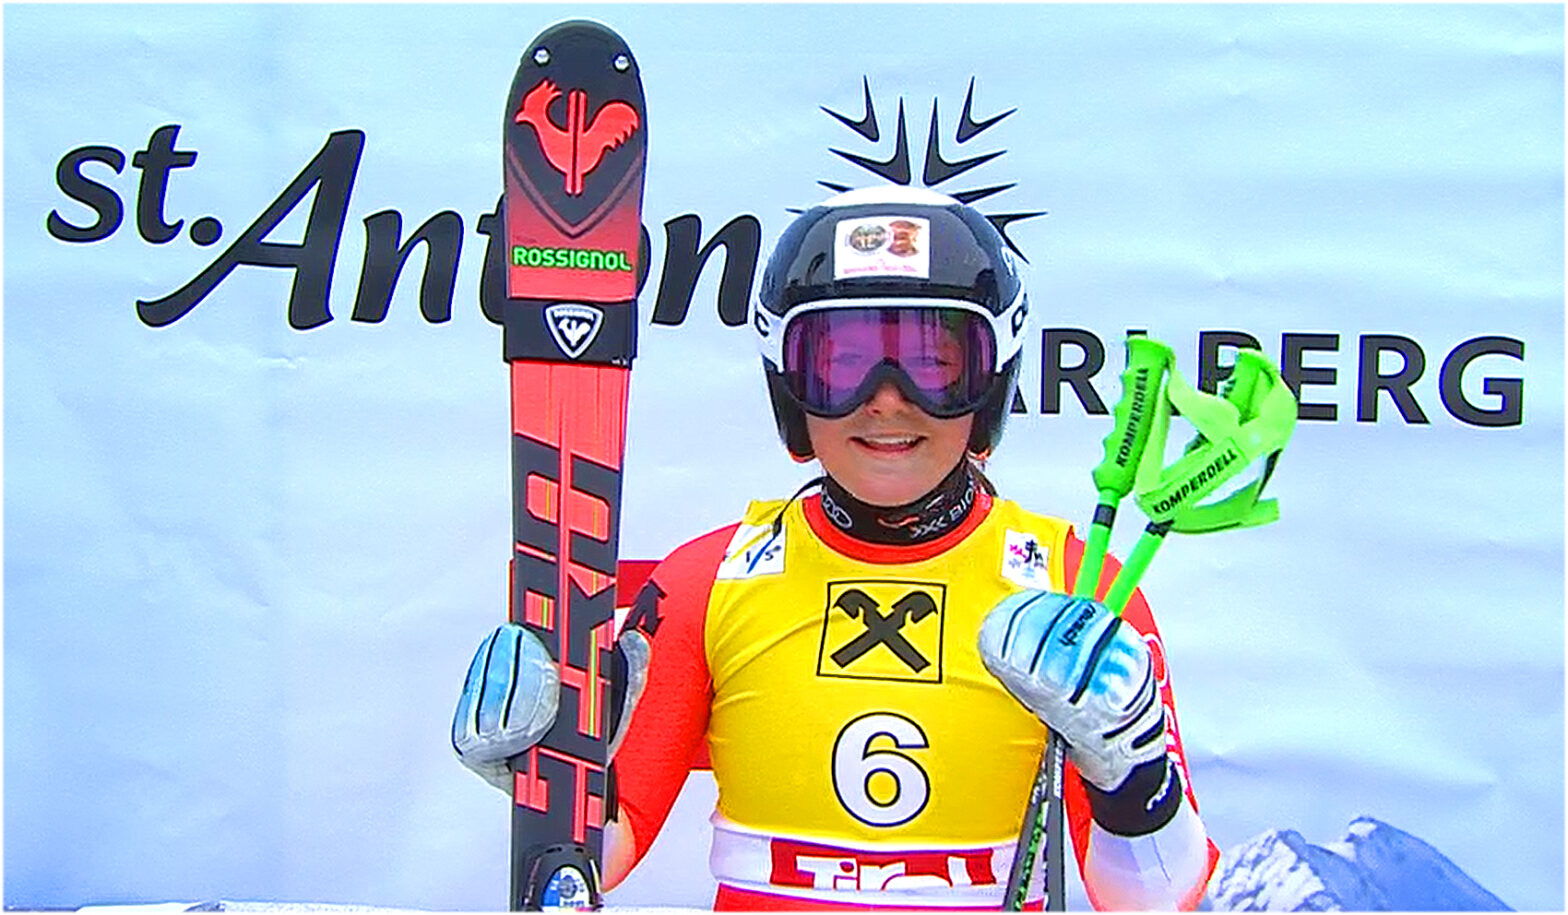 Stefanie Grob war bei der Junioren-WM in St. Anton am Arlberg mit dem Gewinn zweier Gold- und zweier Silbermedaillen das Maß aller Dinge